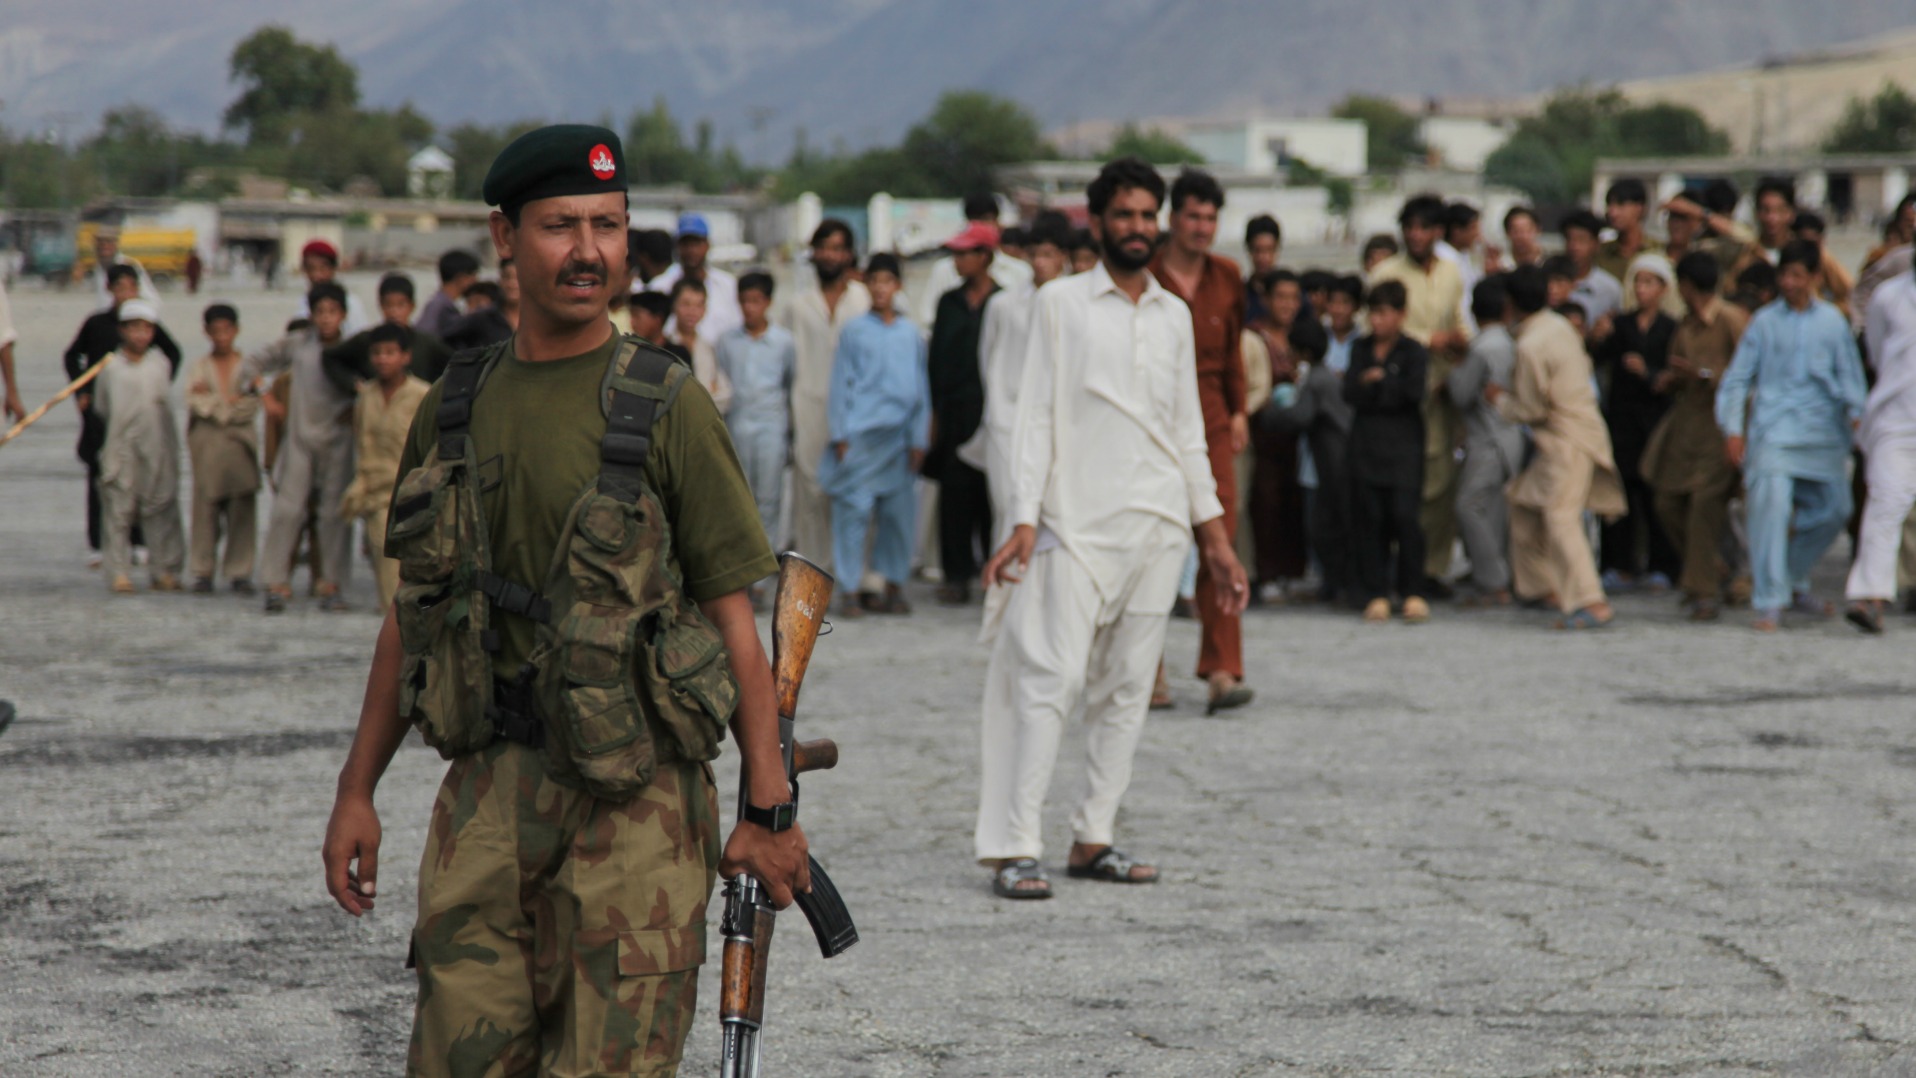 Les soldats pakistanais ont déjoué l'attaque contre le quartier chrétien (Photo d'illustration: Joshua Kruger/Flickr/CC BY-SA 2.0)